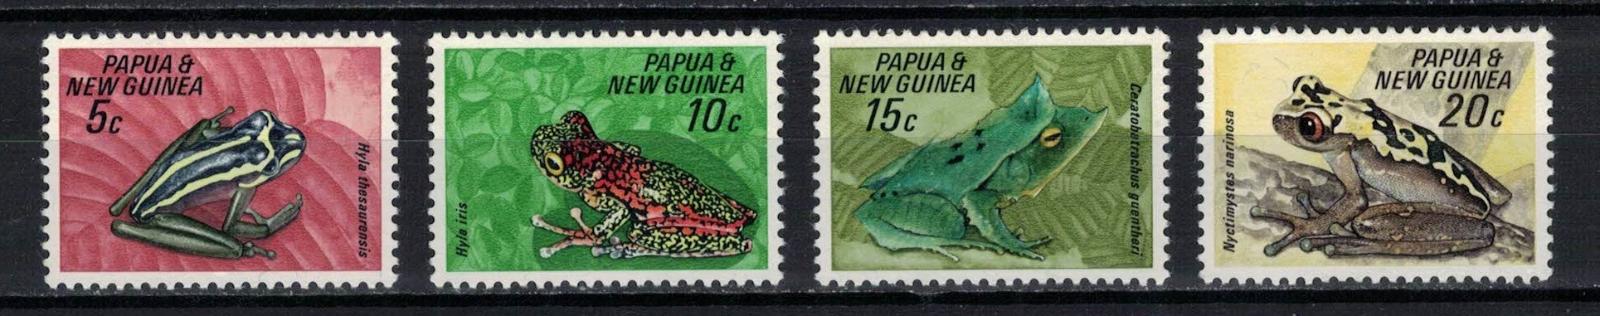 Papua Nová Guinea 1968 kompletní série "Fauna Conservation - Frogs" - Tematické známky